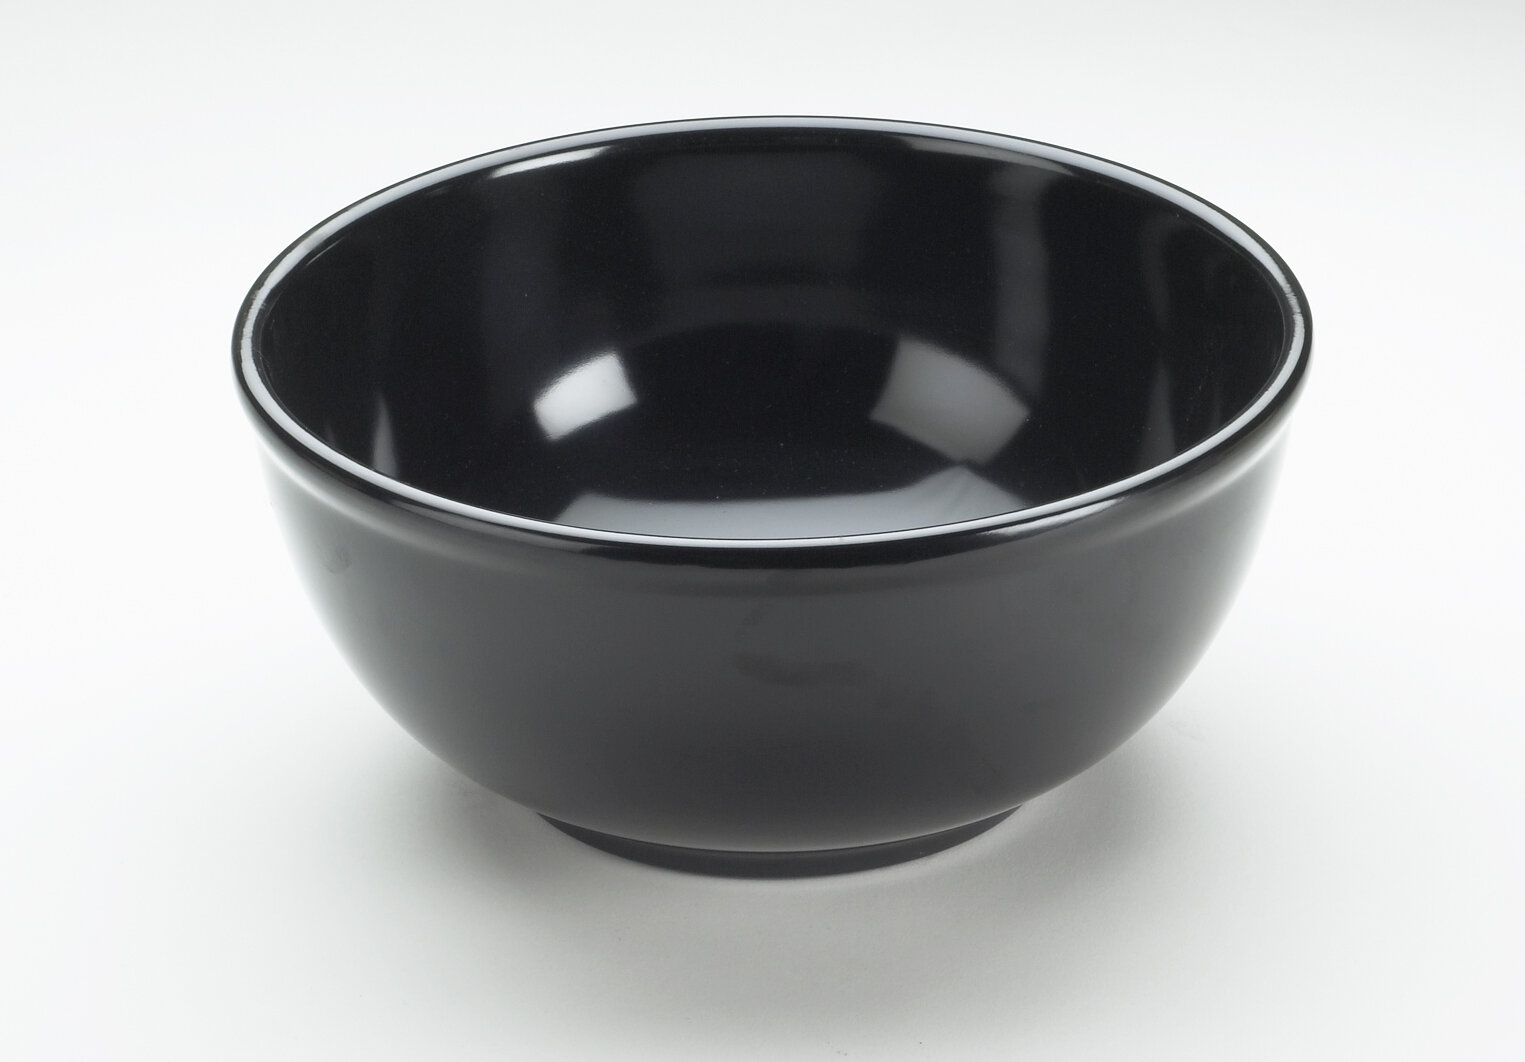 https://assets.wfcdn.com/im/10208621/compr-r85/1441/14417219/cal-mil-melamine-serving-bowl.jpg